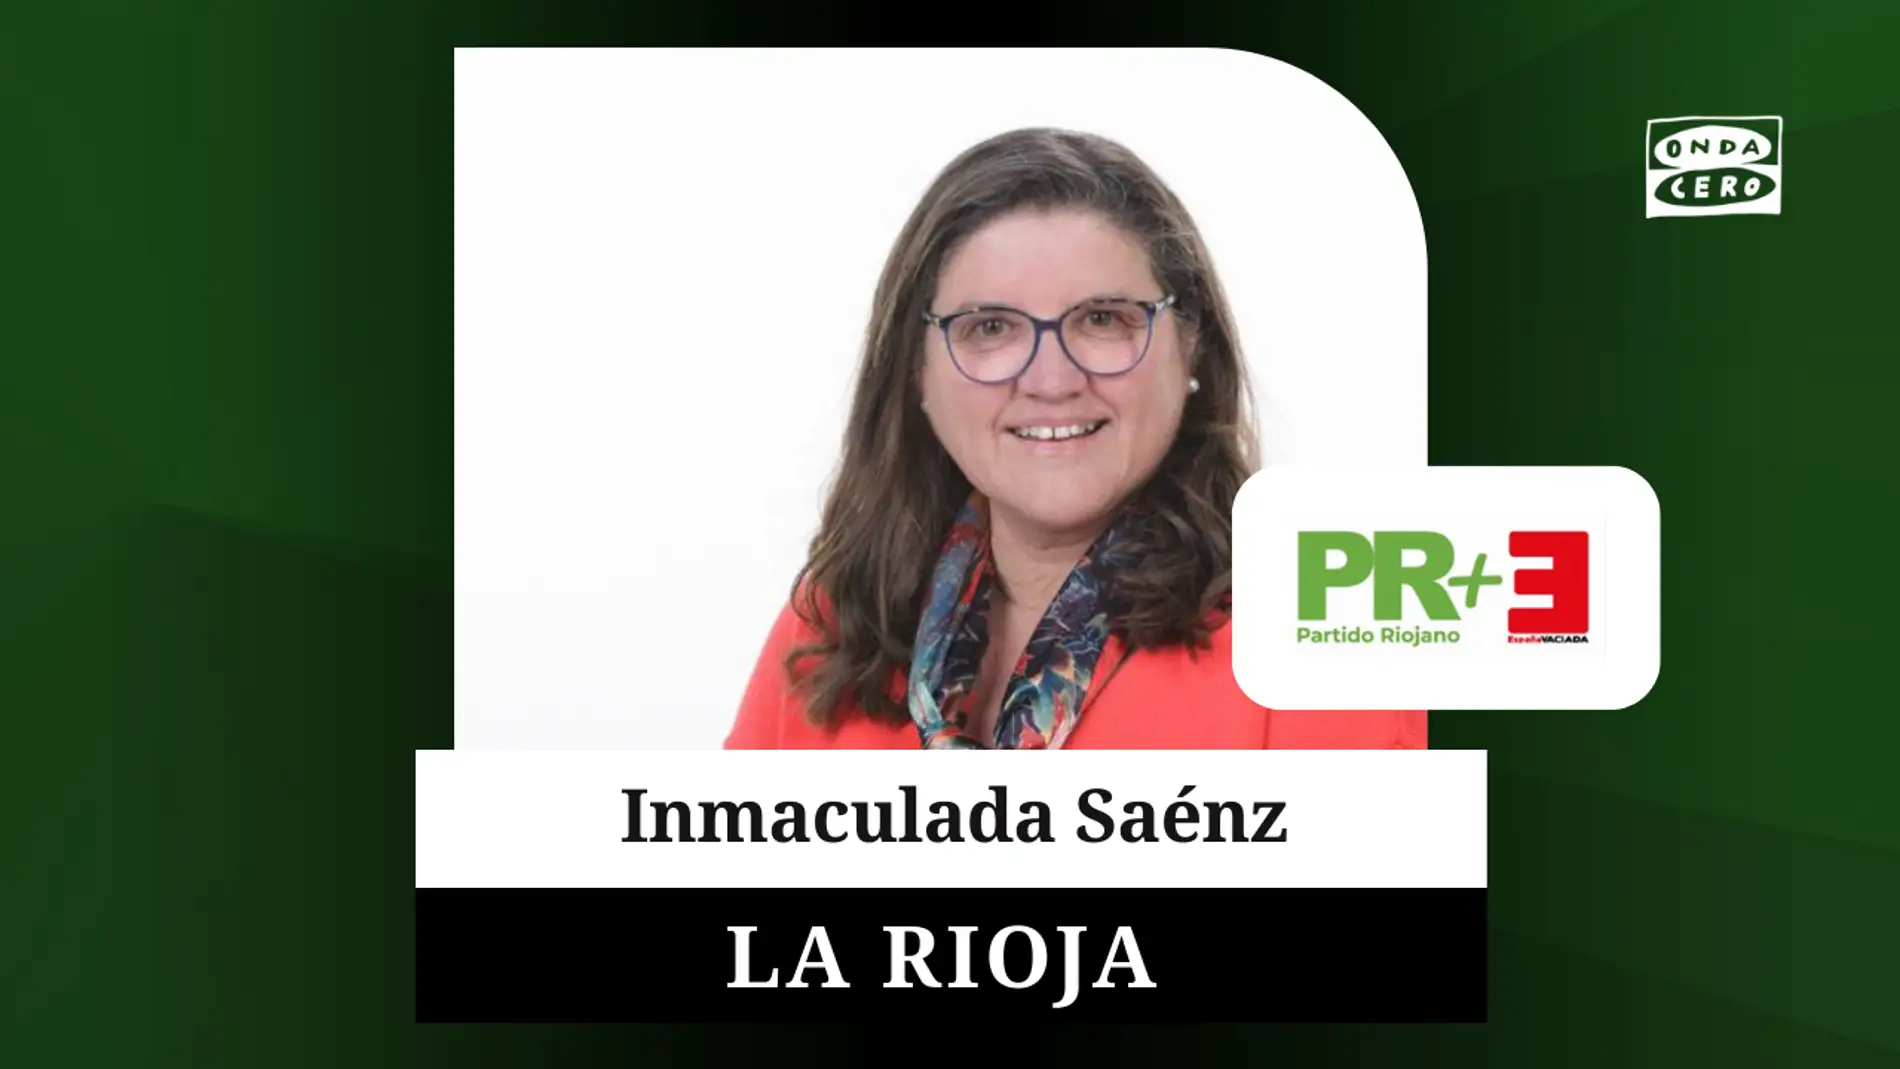 Inmaculada Sáenz, coordinadora general de España Vaciada, aspira a entrar en el Parlamento de La Rioja en coalición con el PR+